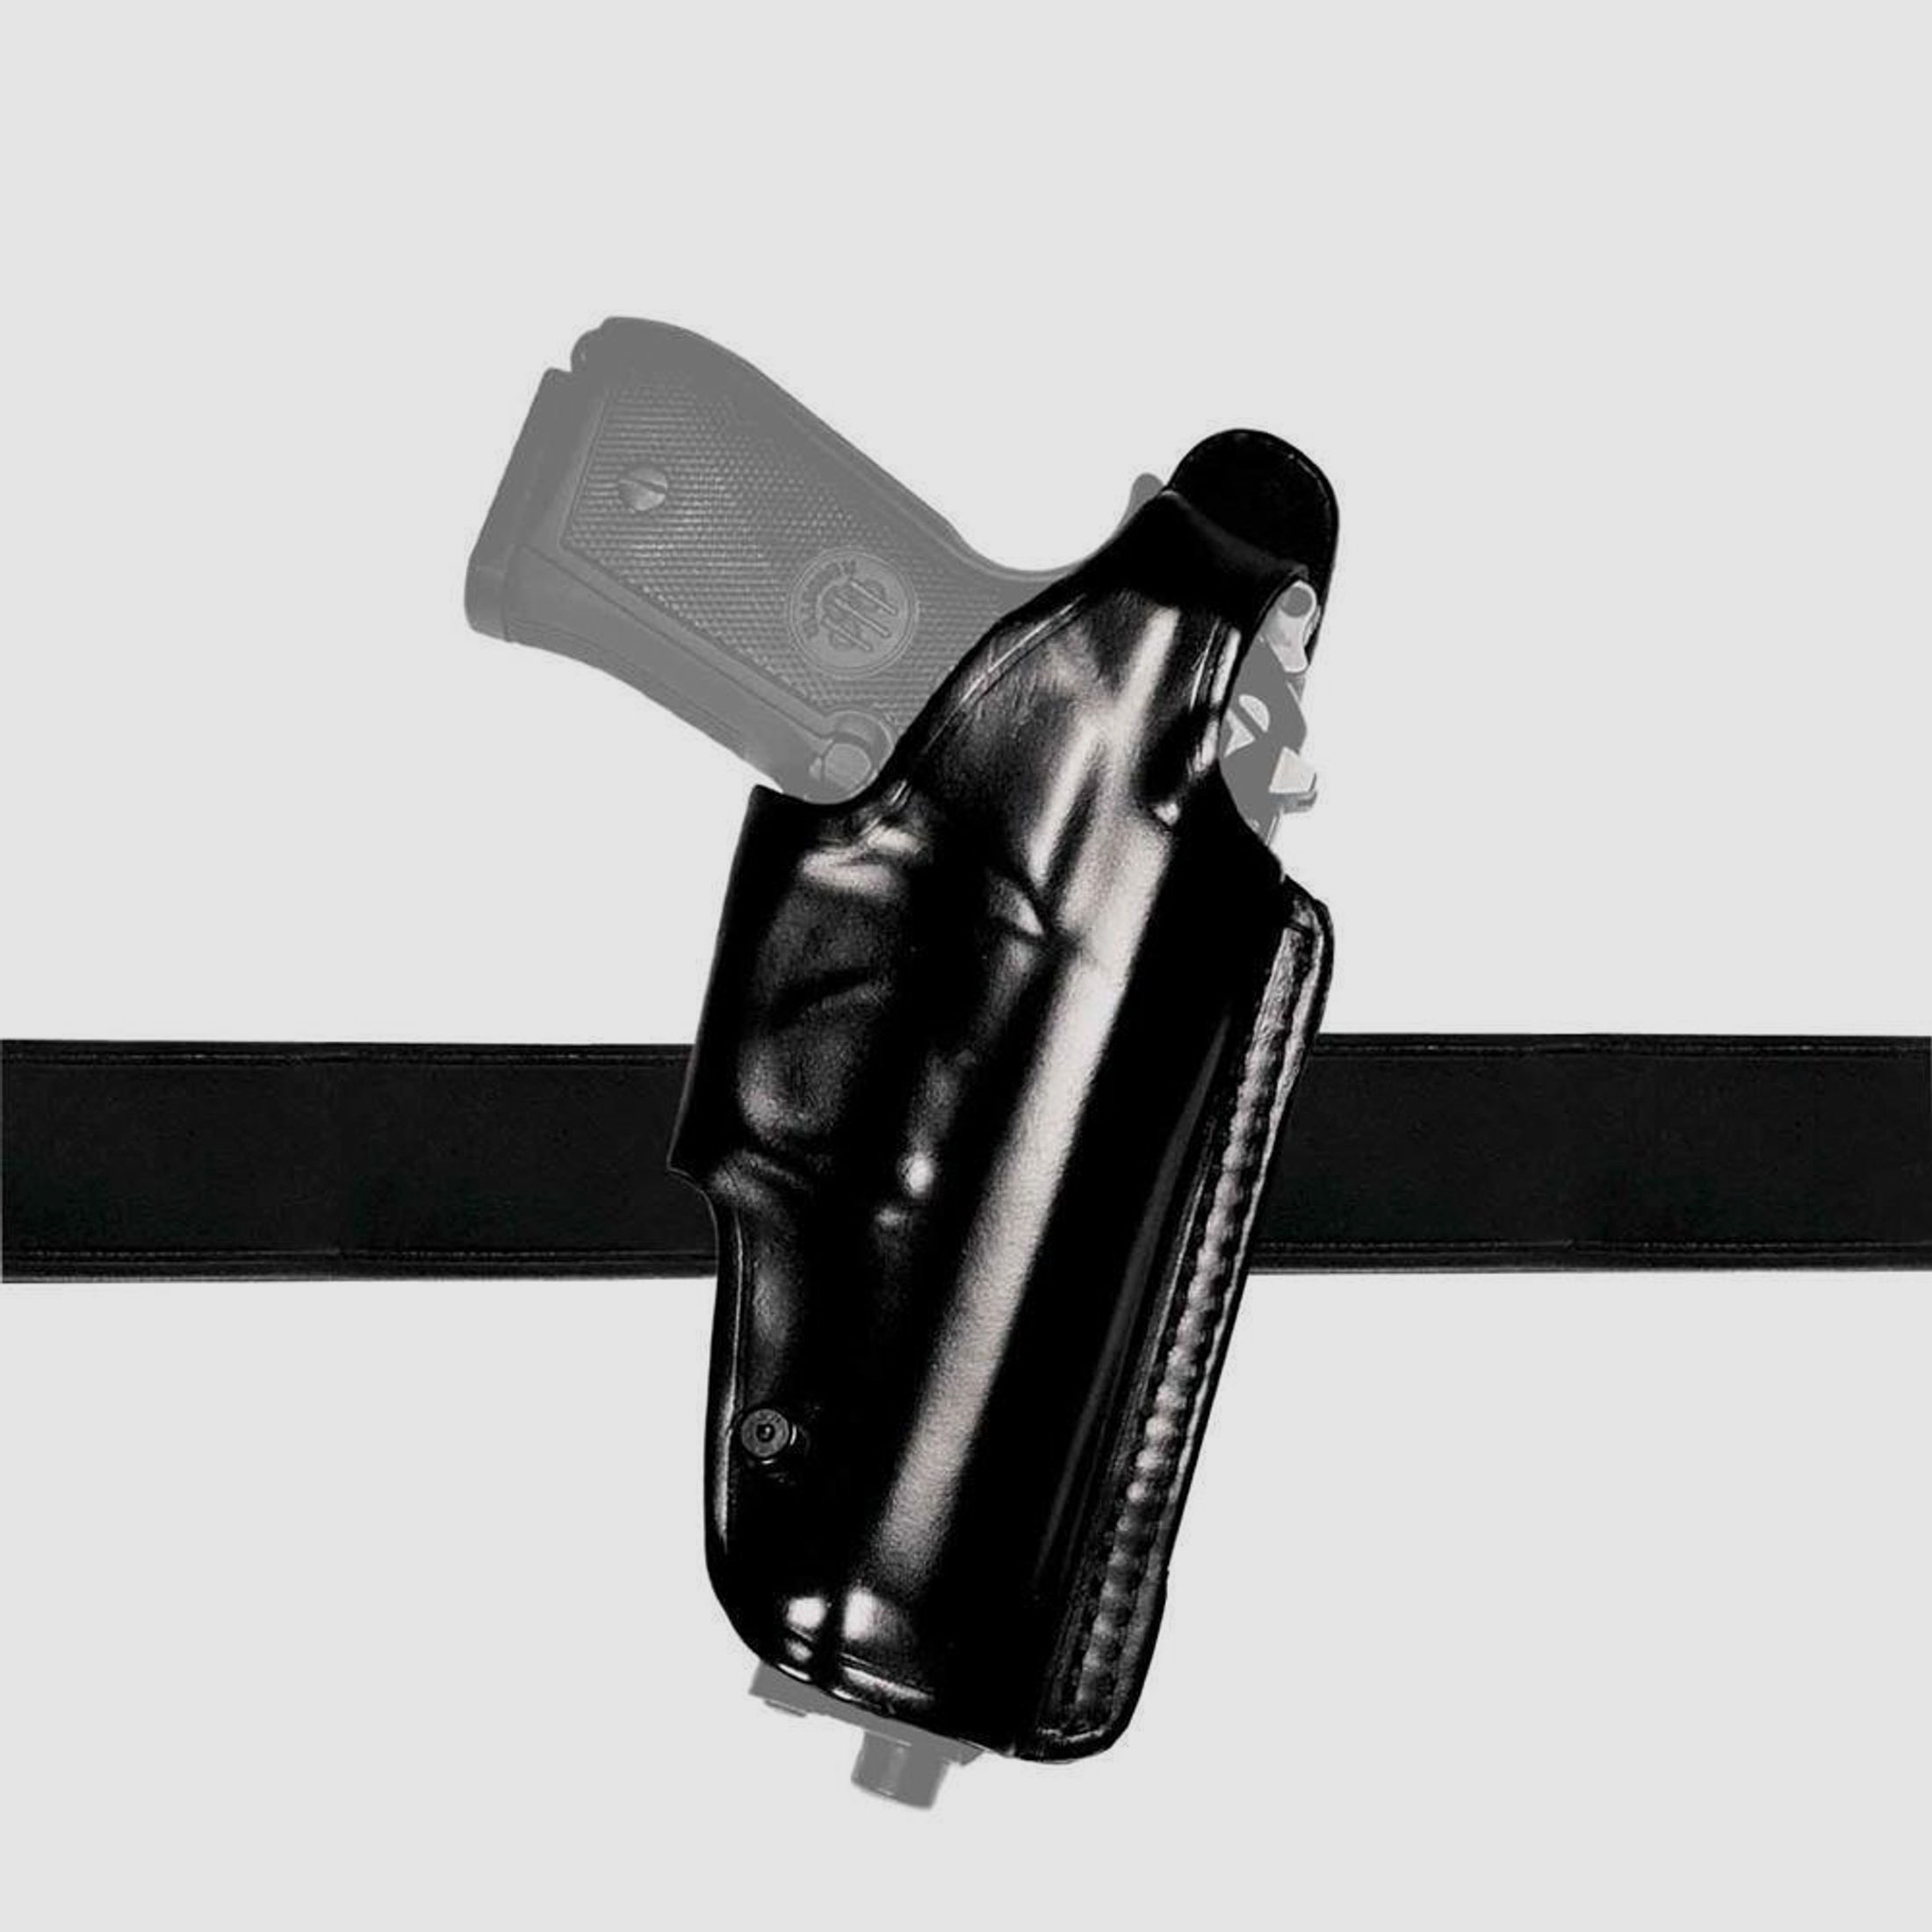 Mehrzweck-Schulterholster/Gürtelholster "Miami 2" Glock 26/27, Walther PPS Braun Rechtshänder